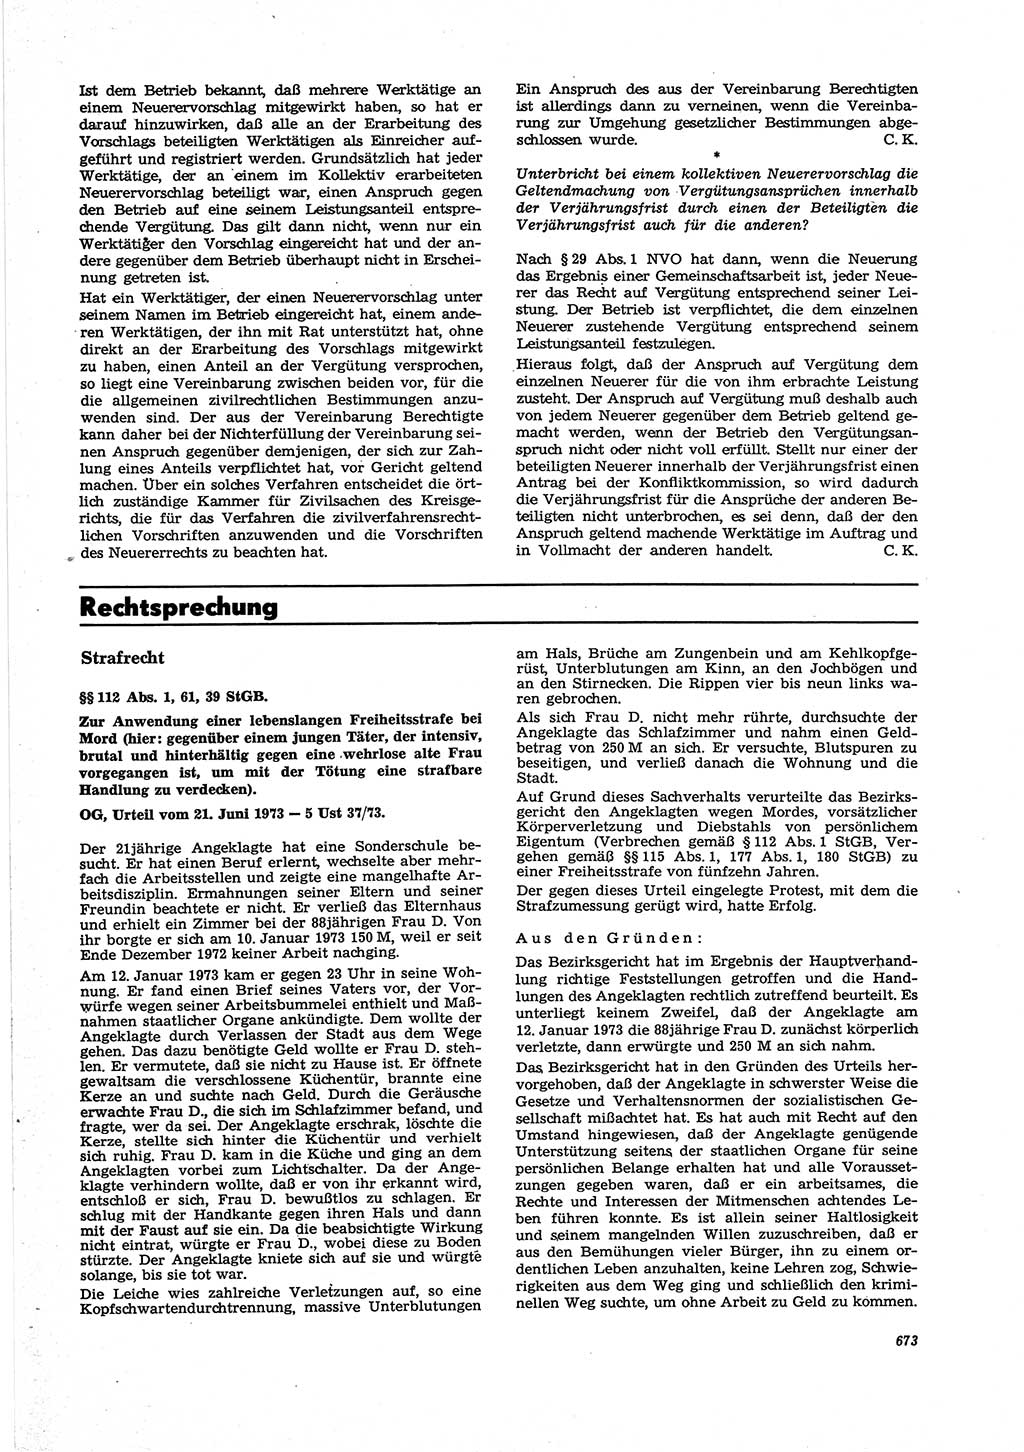 Neue Justiz (NJ), Zeitschrift für Recht und Rechtswissenschaft [Deutsche Demokratische Republik (DDR)], 27. Jahrgang 1973, Seite 673 (NJ DDR 1973, S. 673)